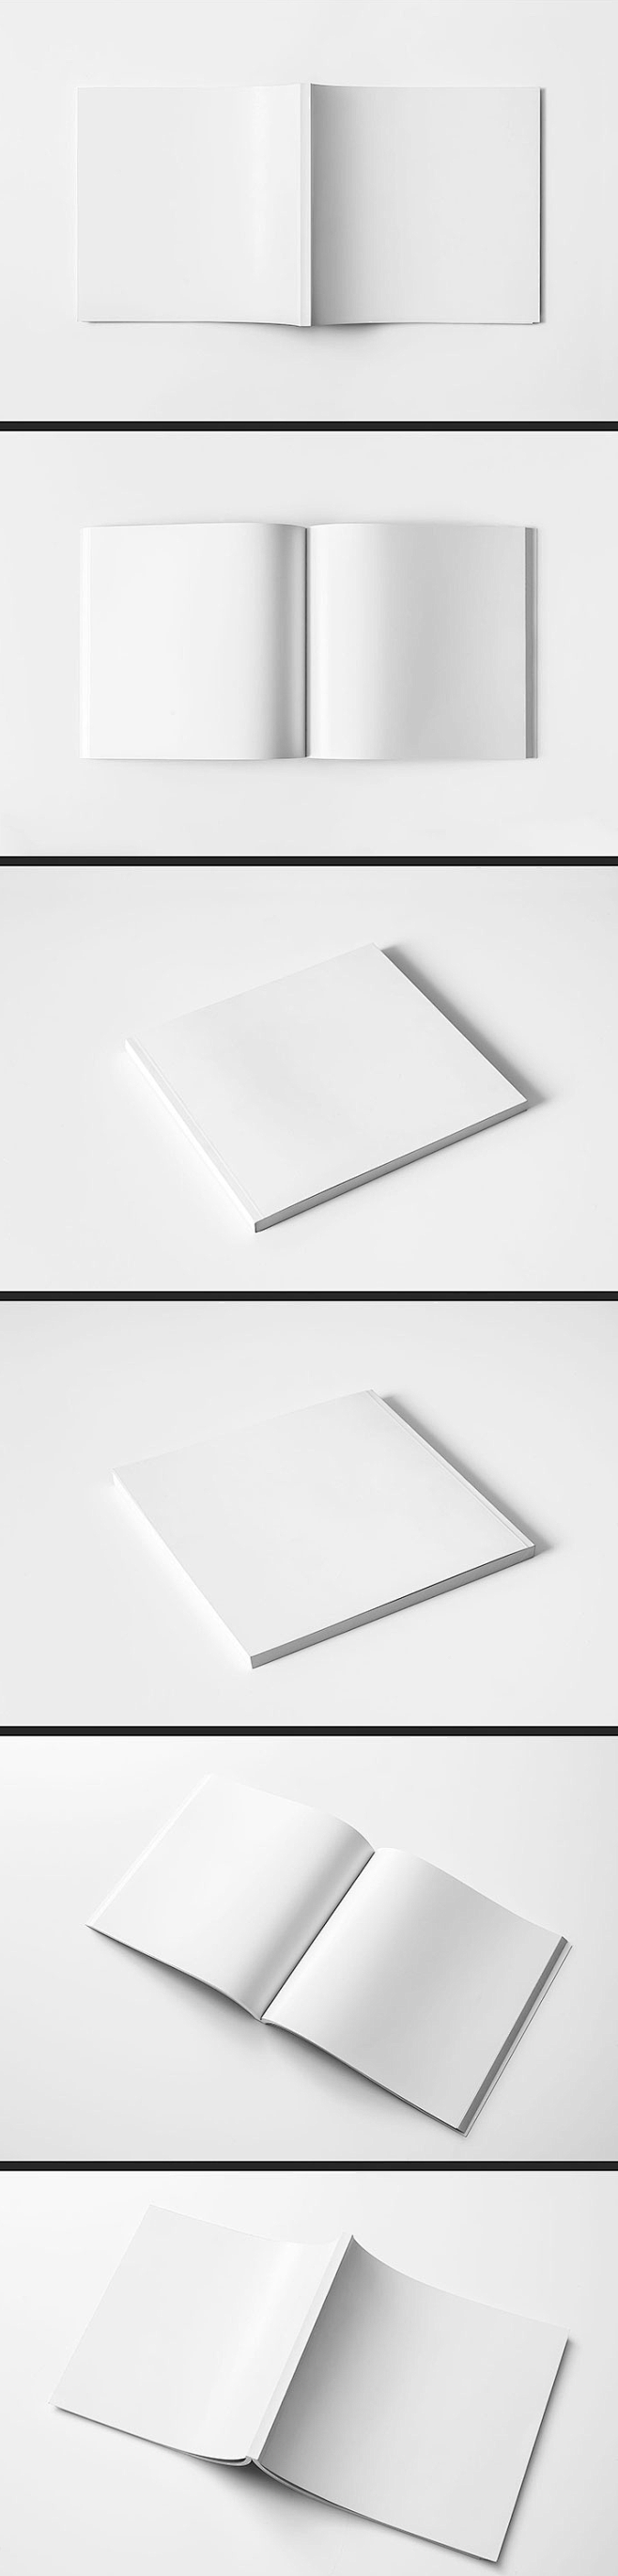 空白画册模板psd分层版式封面效果图贴图...